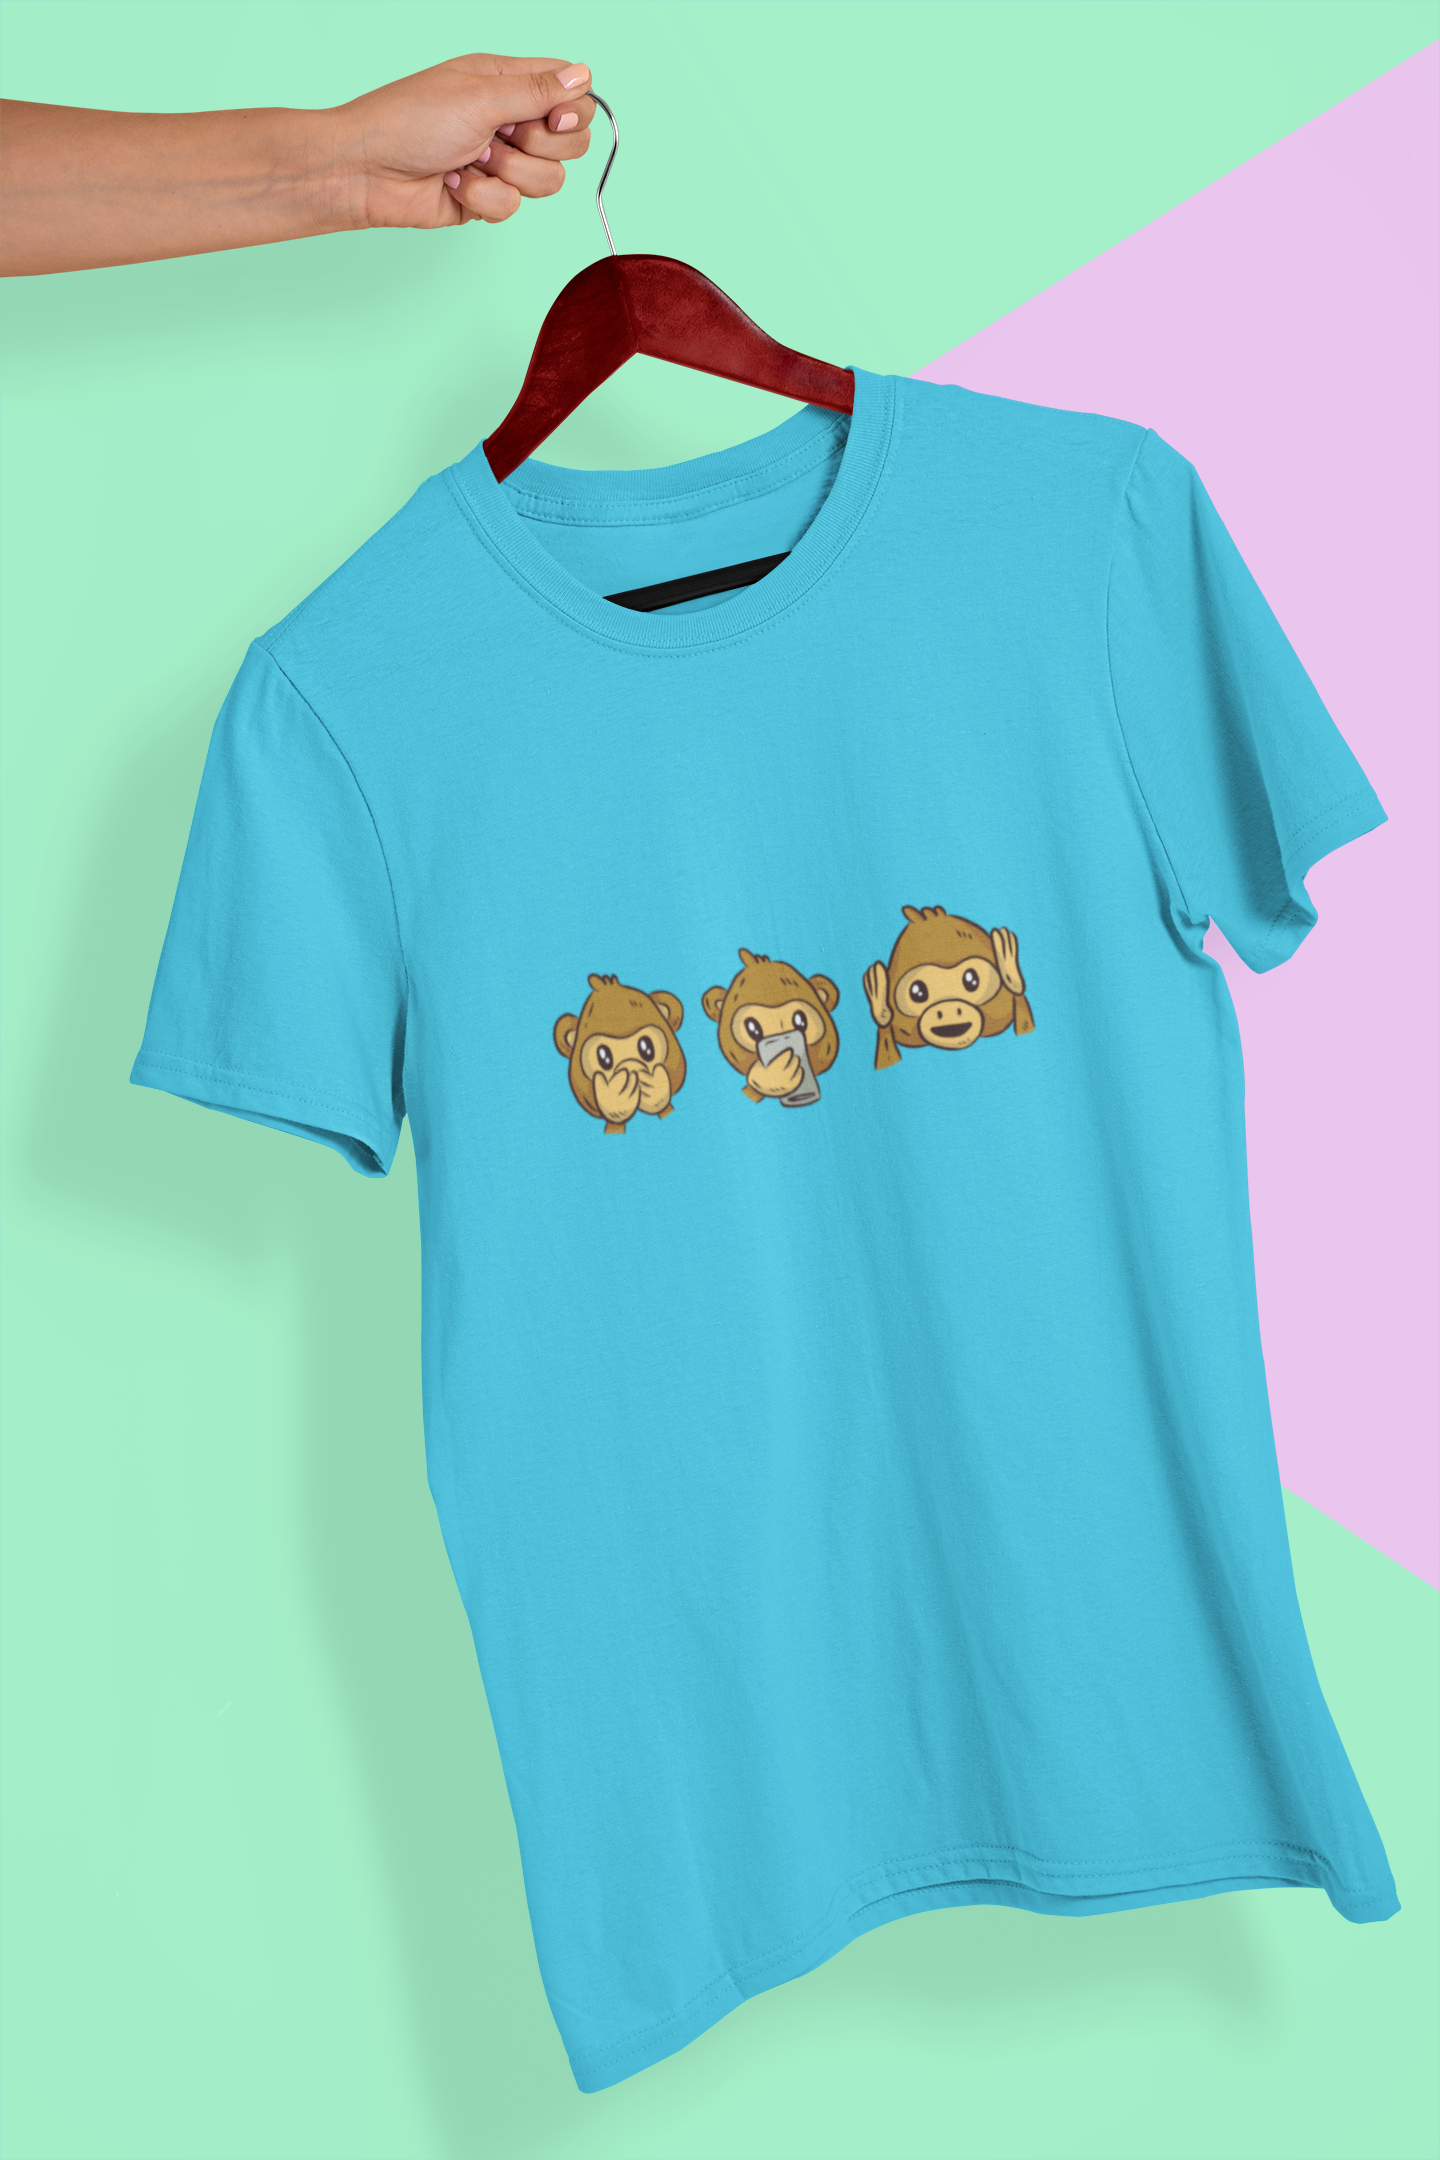 Monkey Emojis Mens Half Sleeves T-shirt- FunkyTeesClub